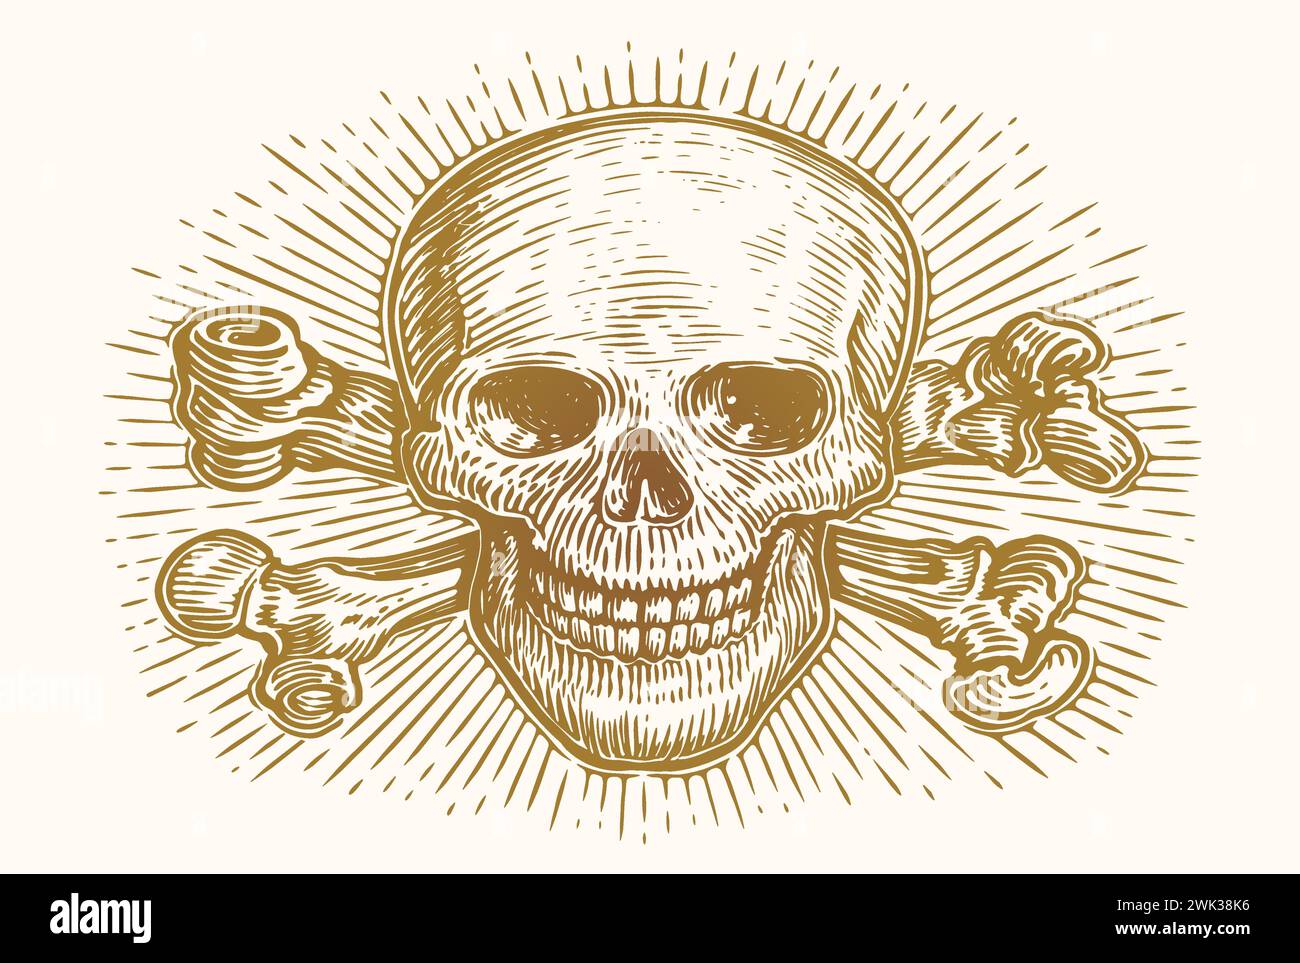 Cranio e ossa incrociate con raggi. Schizzo della testa di scheletro umano. Illustrazione vettoriale vintage disegnata a mano Illustrazione Vettoriale